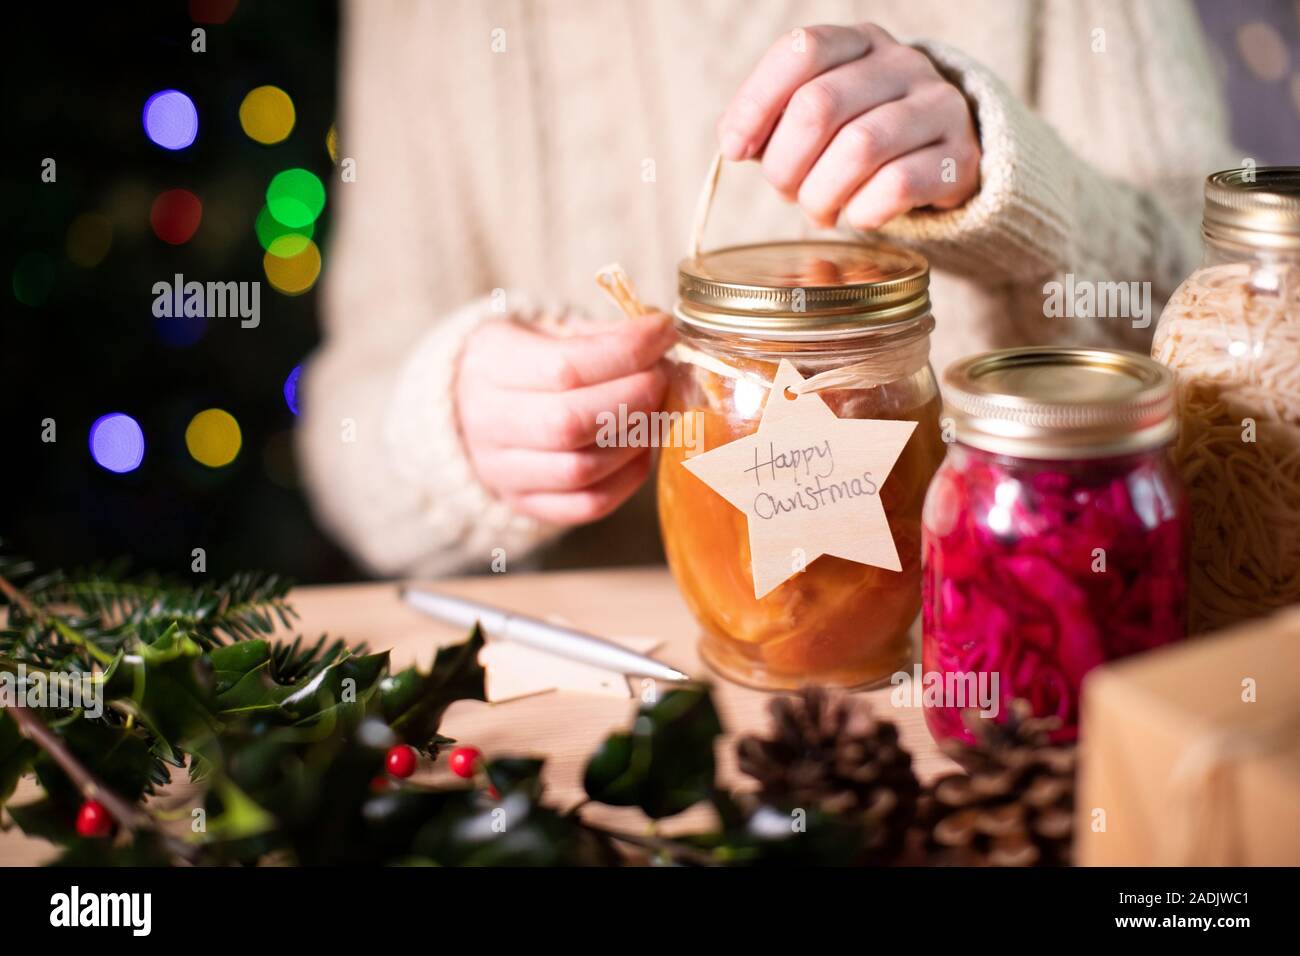 Poner etiqueta del regalo de madera reutilizables en tarros casera de conservas de fruta para regalo de Navidad ecológica Foto de stock